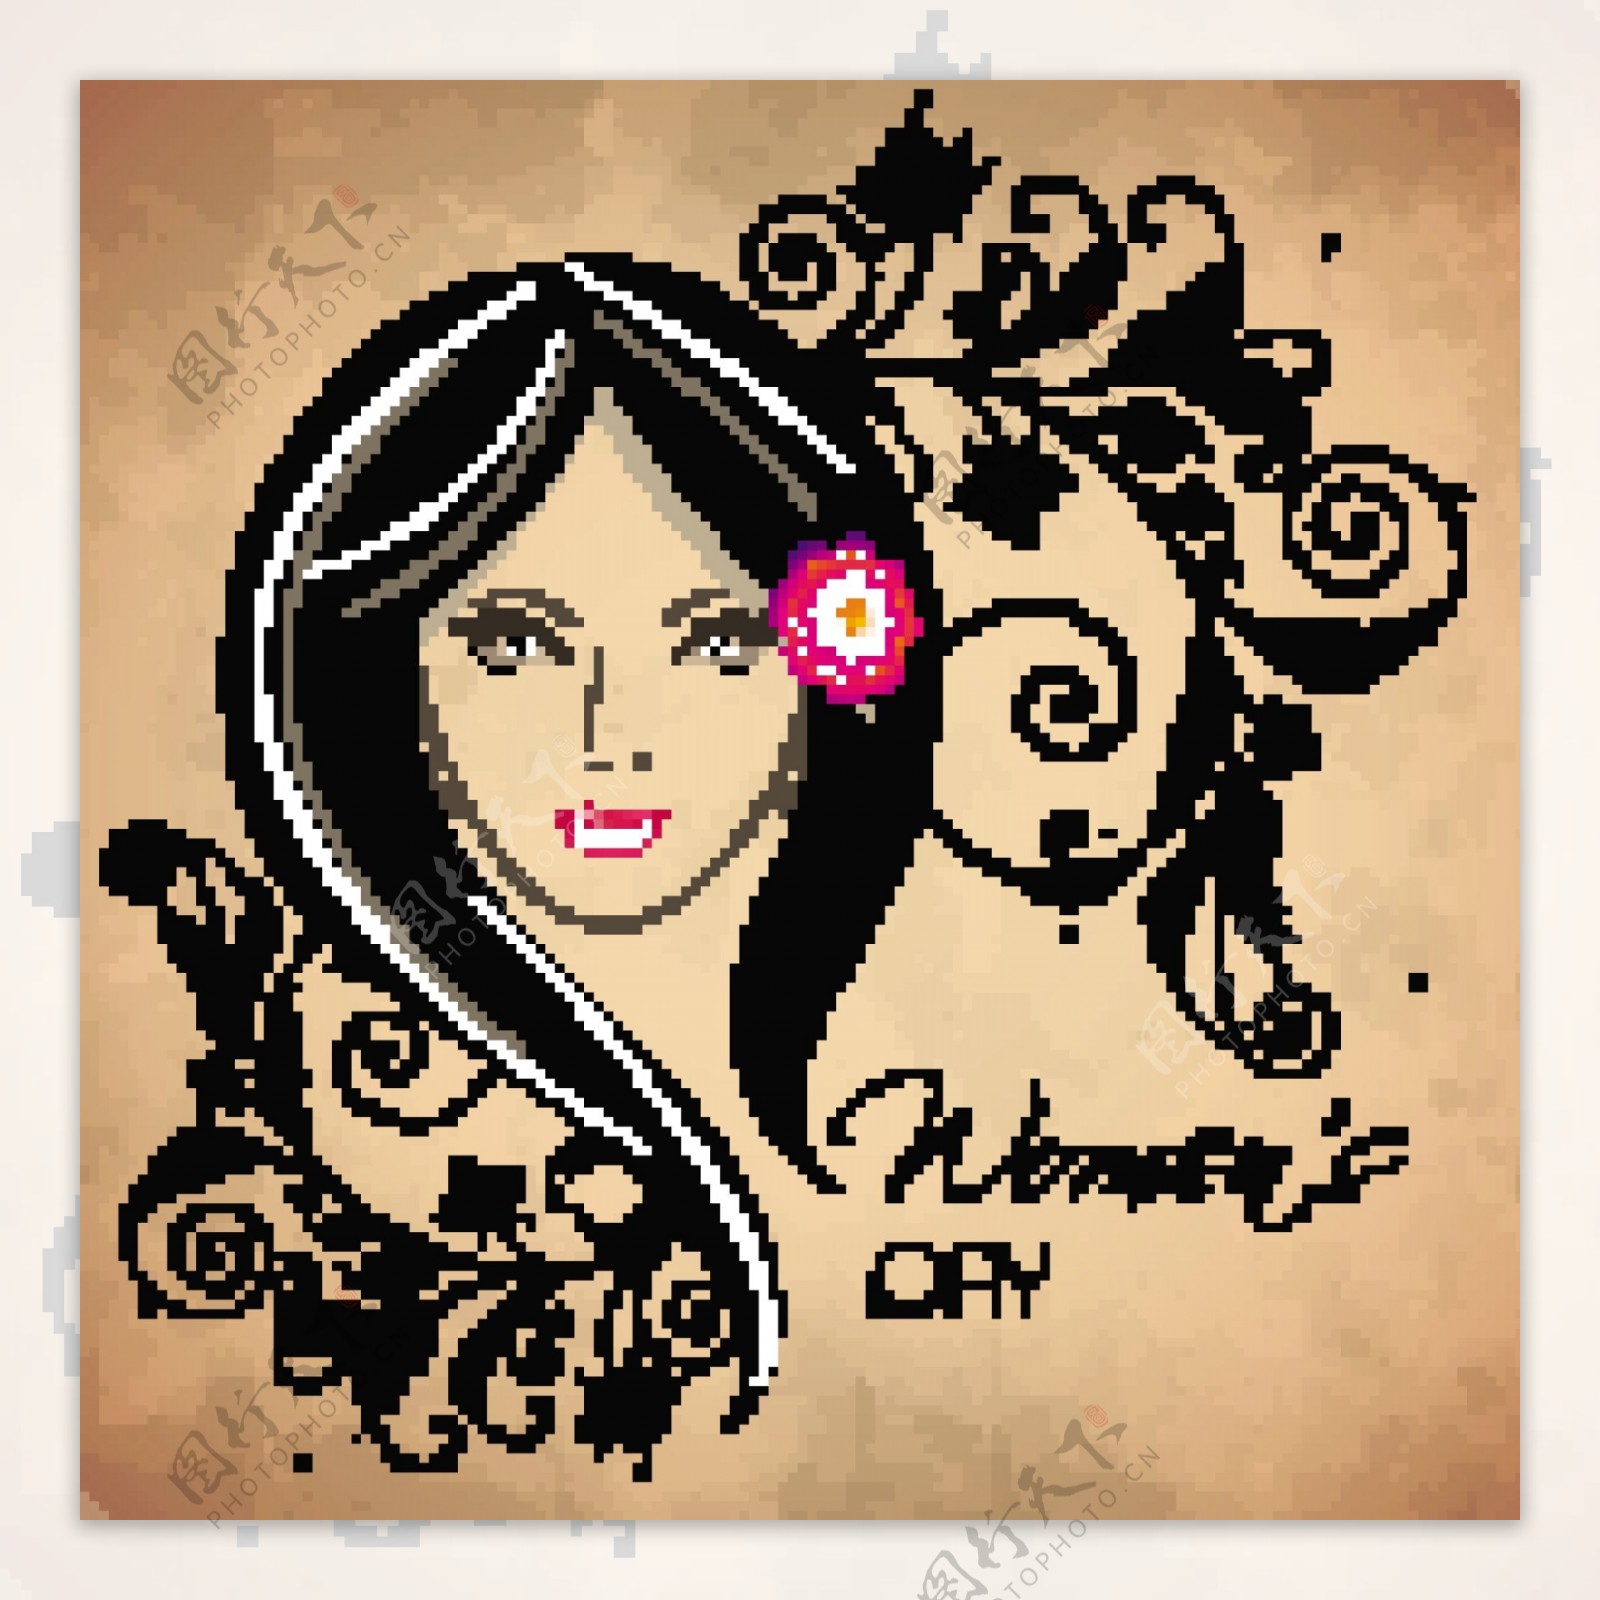 三八妇女节贺卡或海报用花装饰的棕色背景一个漂亮的女孩插画设计